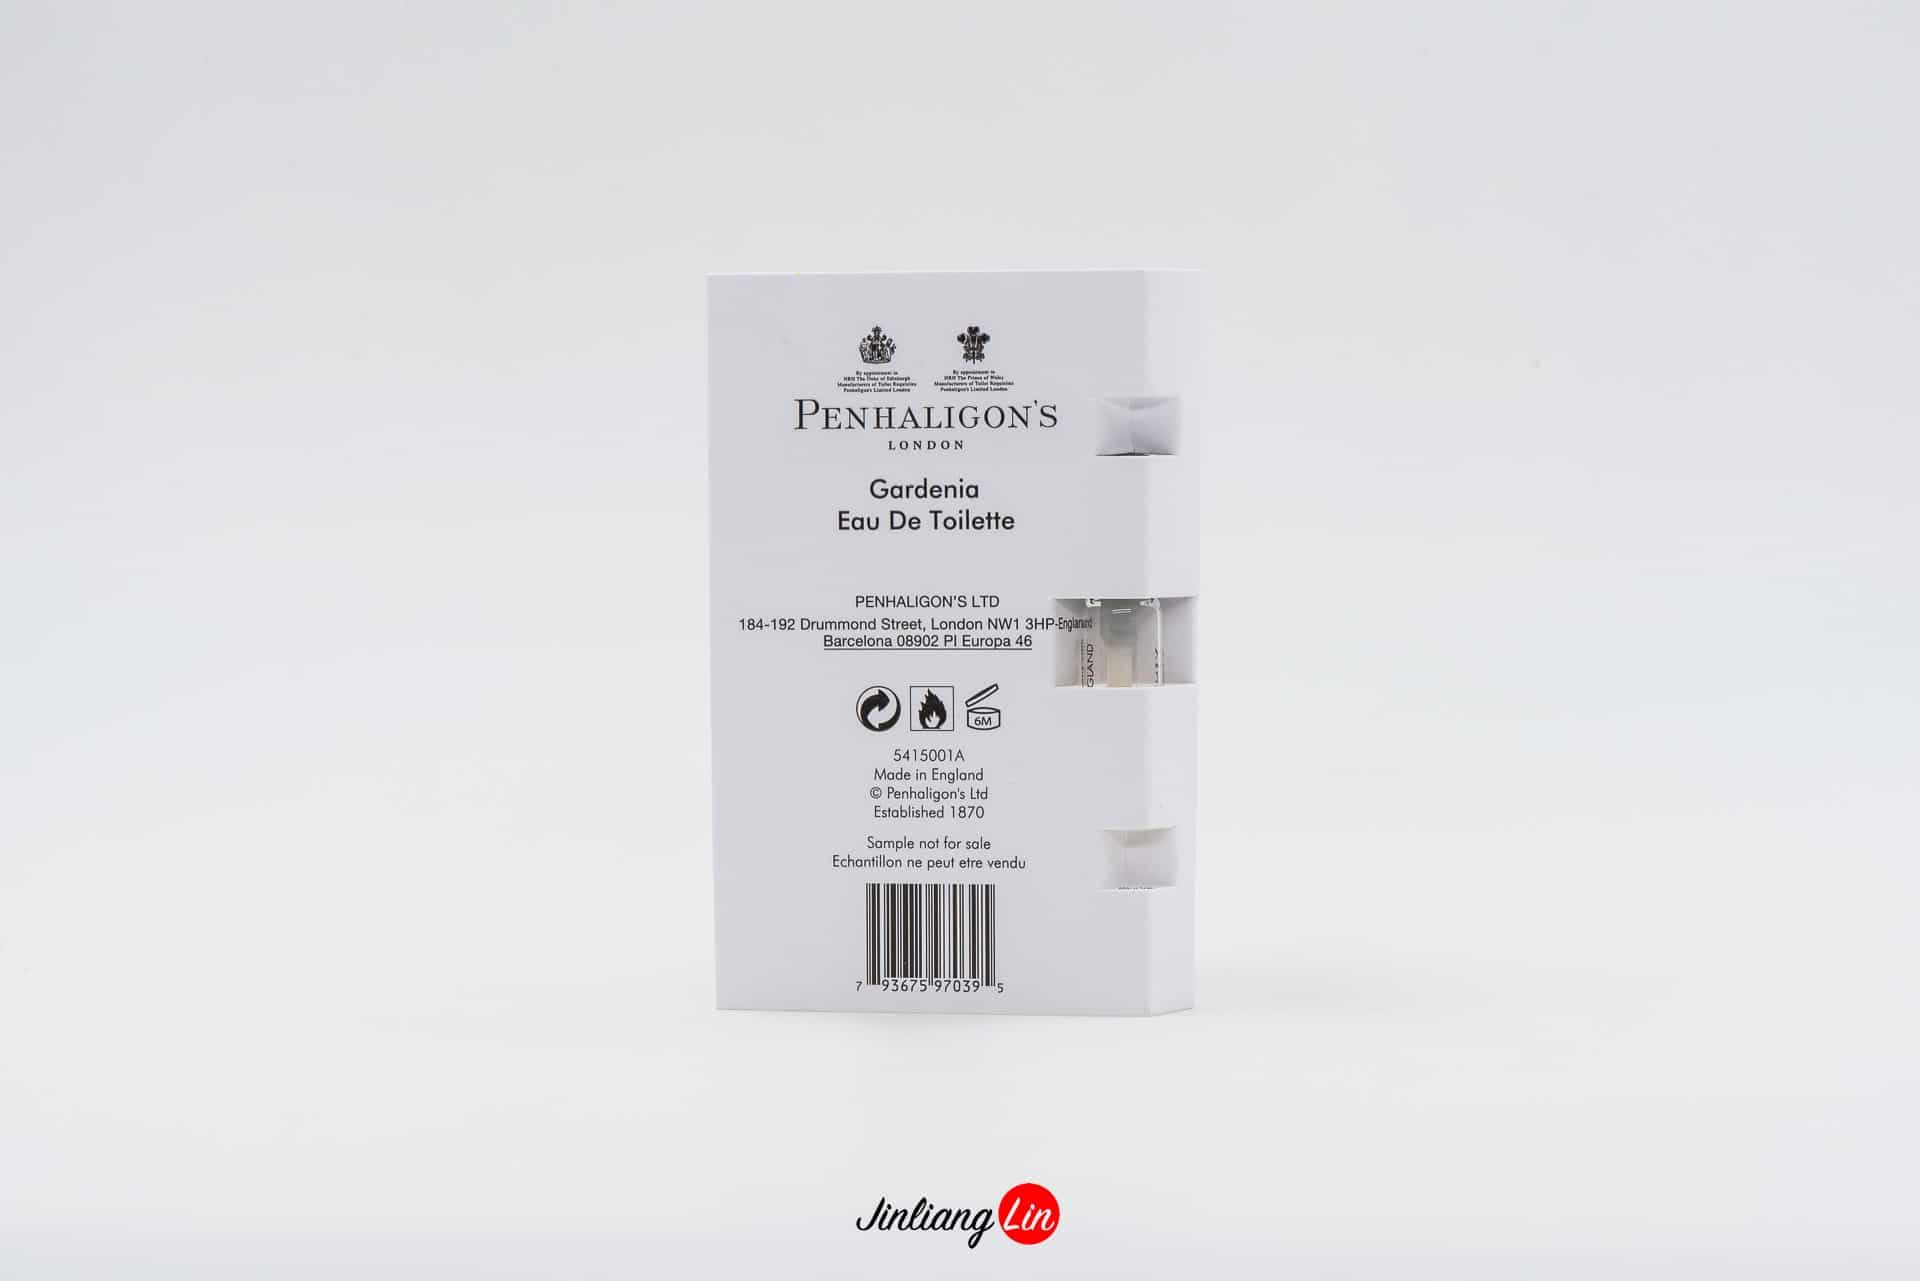 PENHALIGON’S Gardenia Eau De Toilette